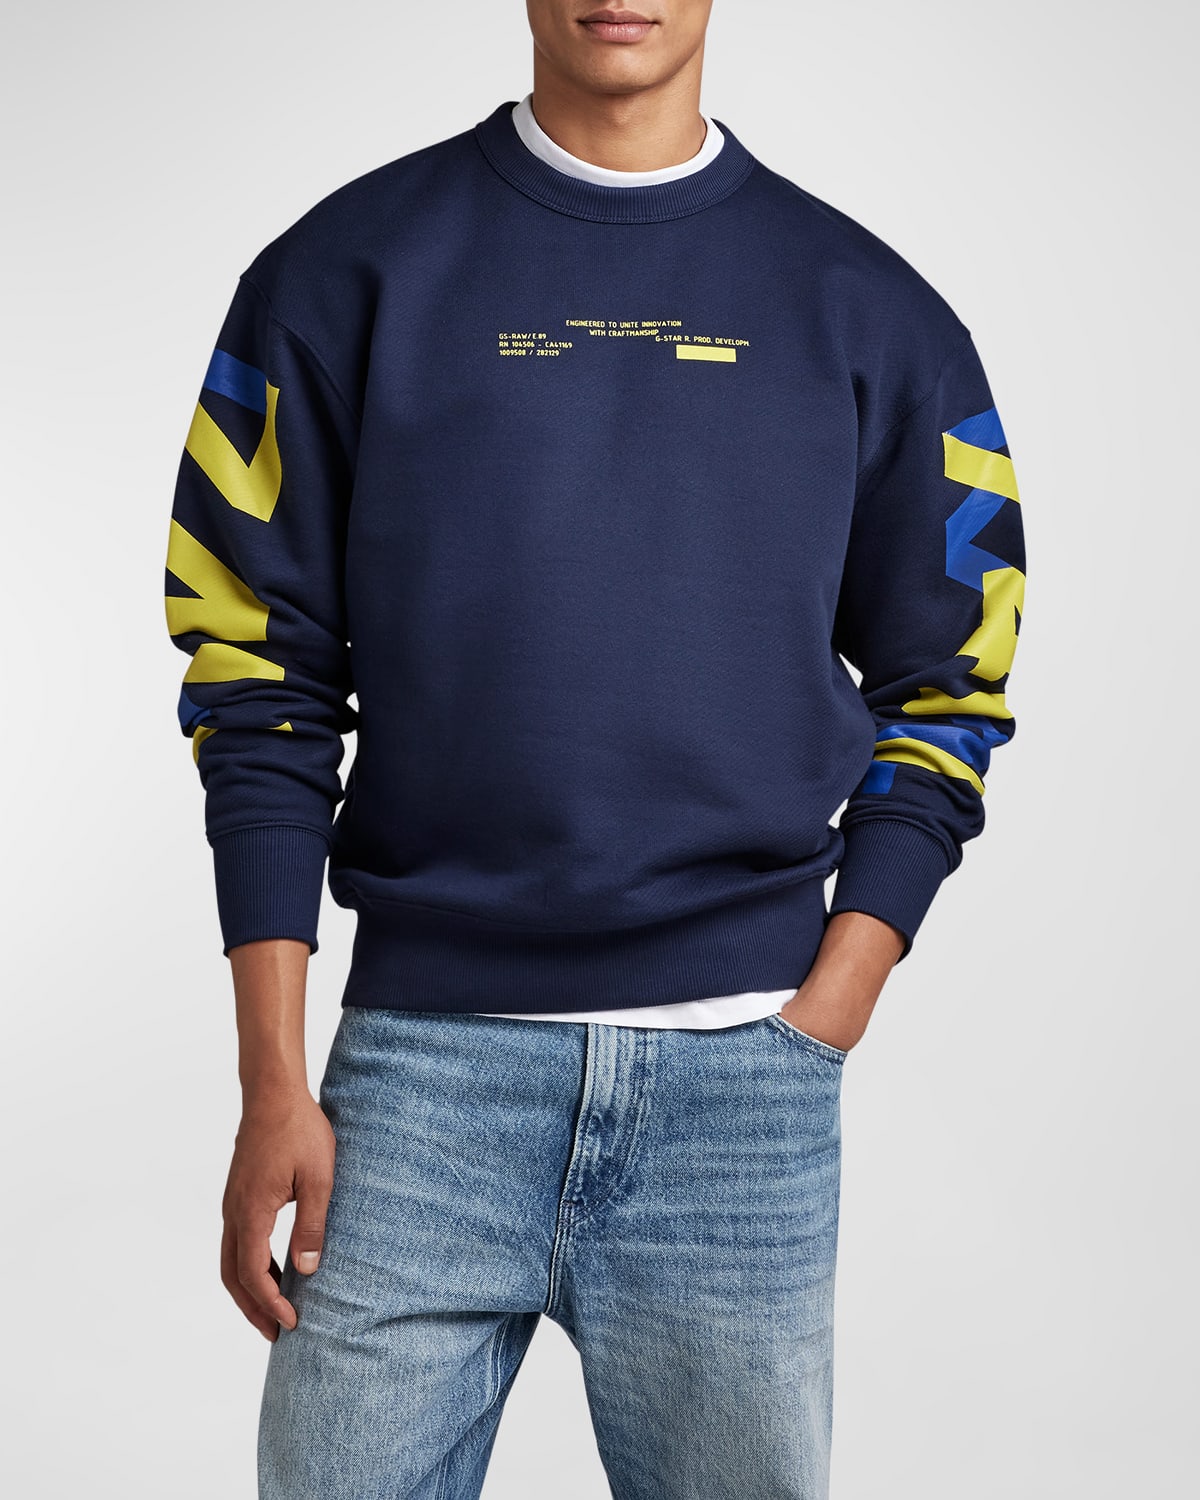 Men's 7411 Typographic Sweatshirt